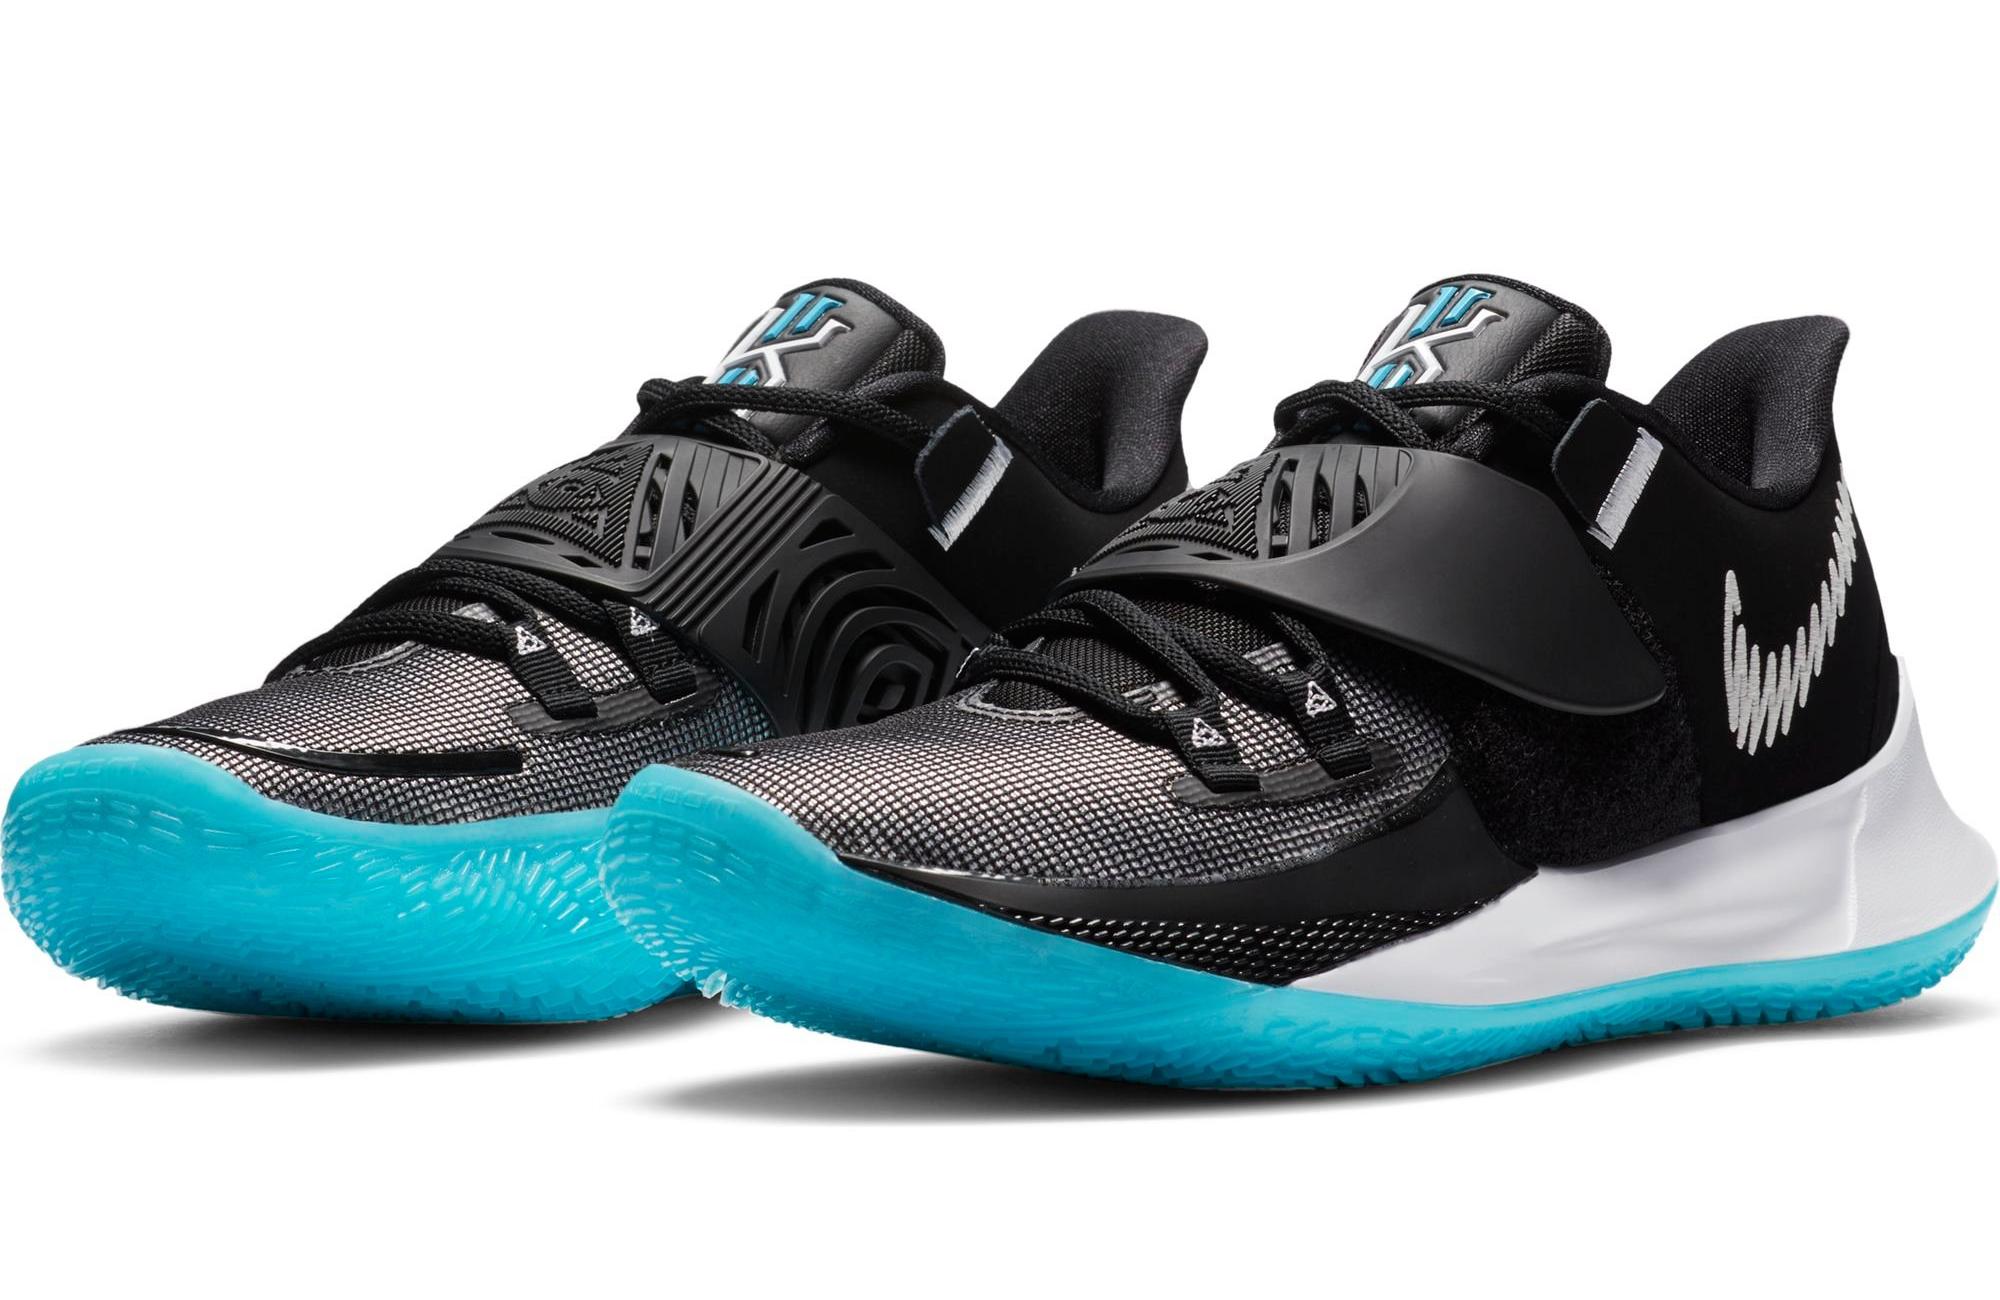 Sneakers Release – Nike Kyrie Low 3 “Moon” Men’s Basketball Shoe